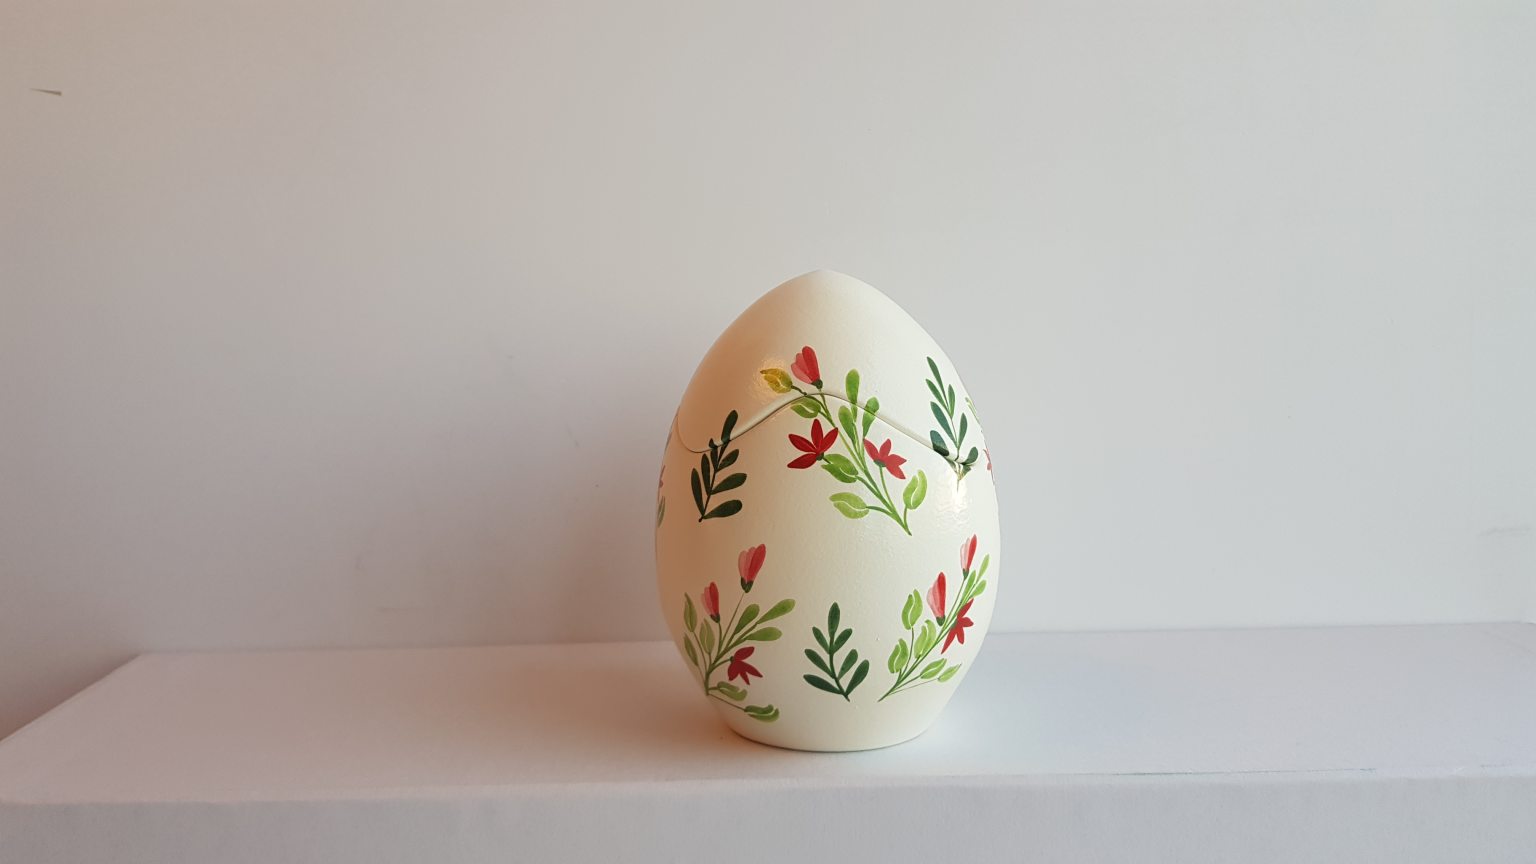 Handmade egg "Red flowers"